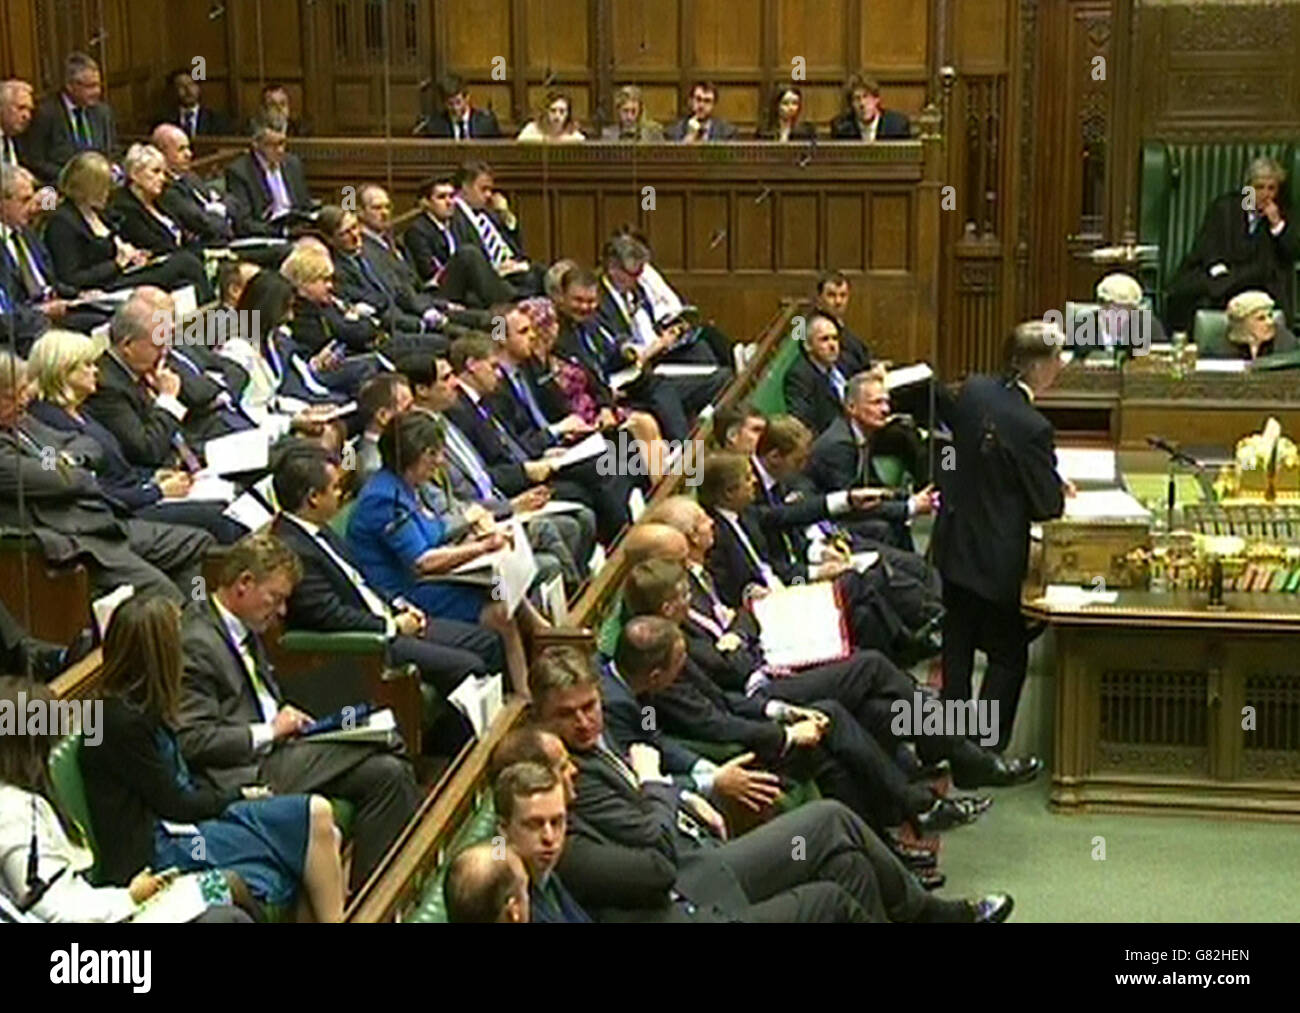 Il Segretario agli Esteri Philip Hammond parla alla Camera dei Comuni, Londra, durante un dibattito sul progetto di legge per un referendum europeo. Foto Stock